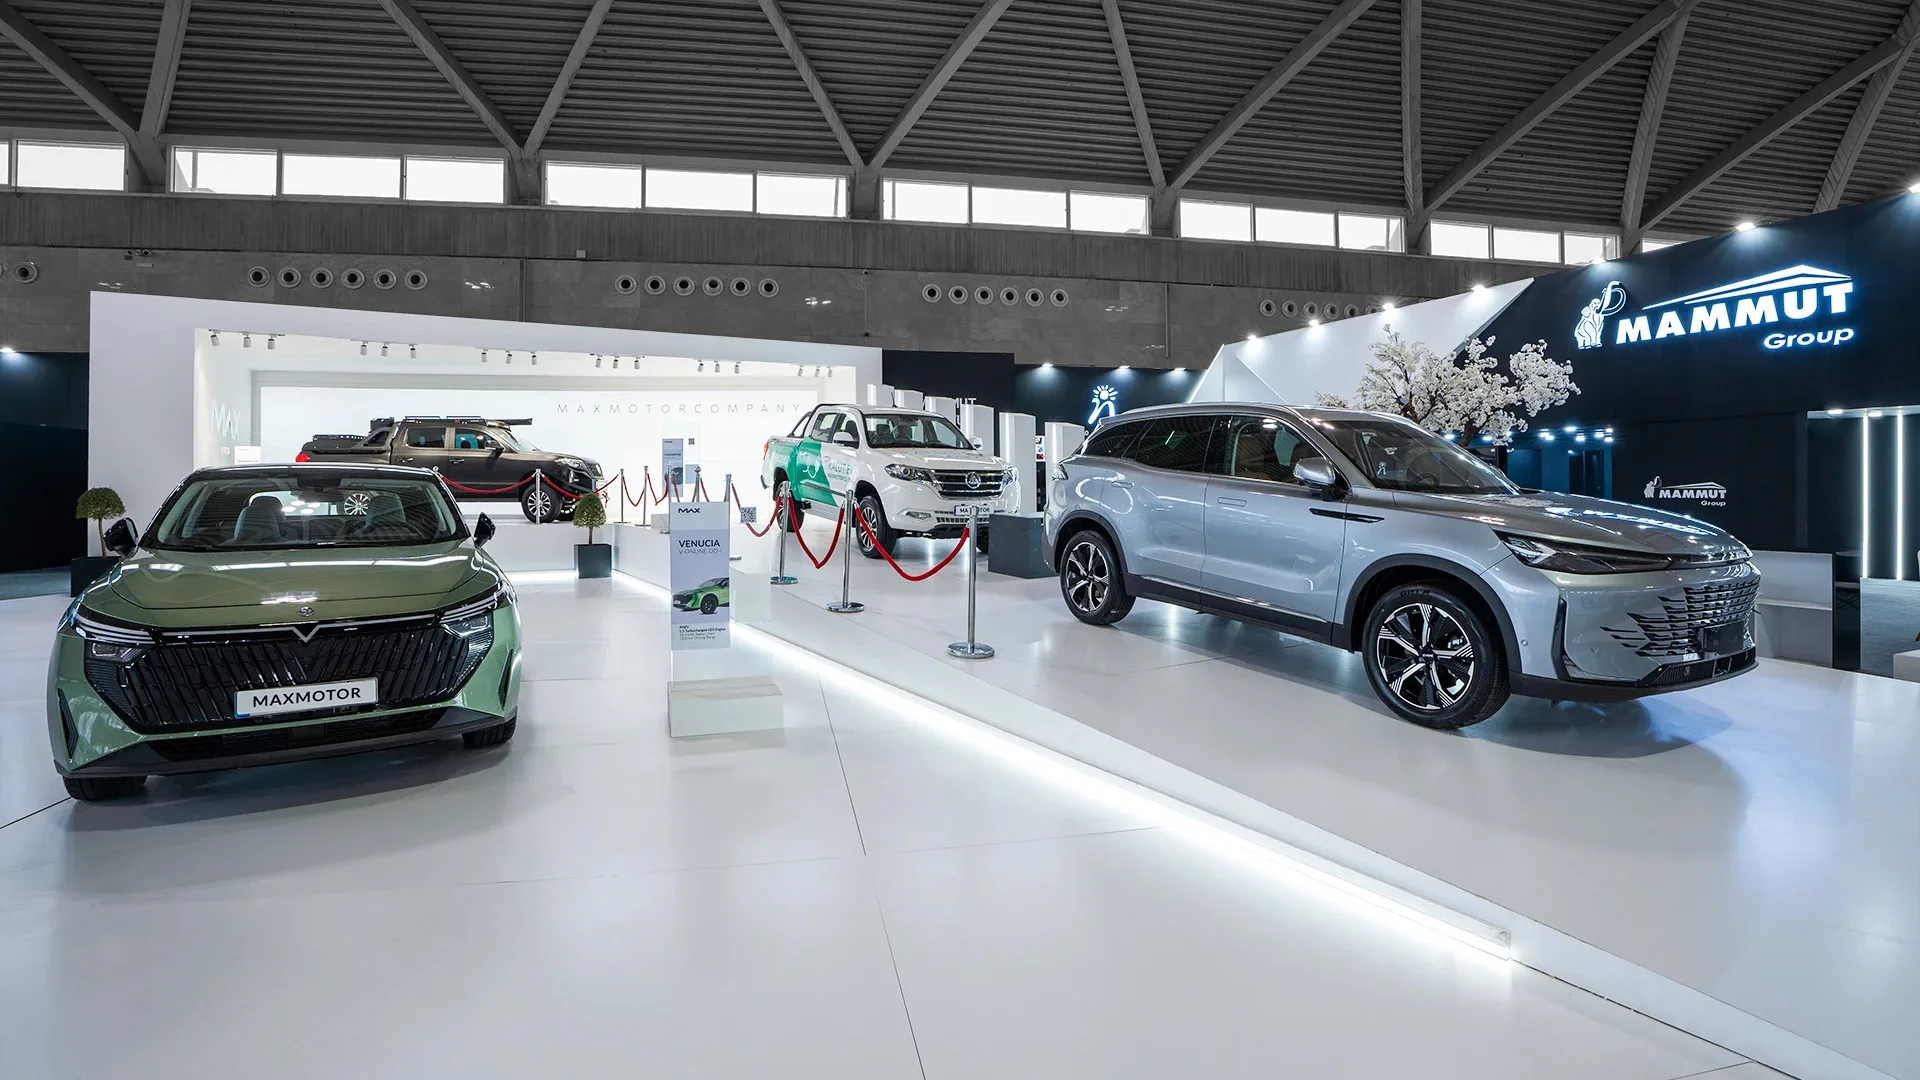   طراحی غرفه و غرفه سازی نمایشگاهی هولدینگ ماموت نمایشگاه خودرو شهر آفتاب 1402 